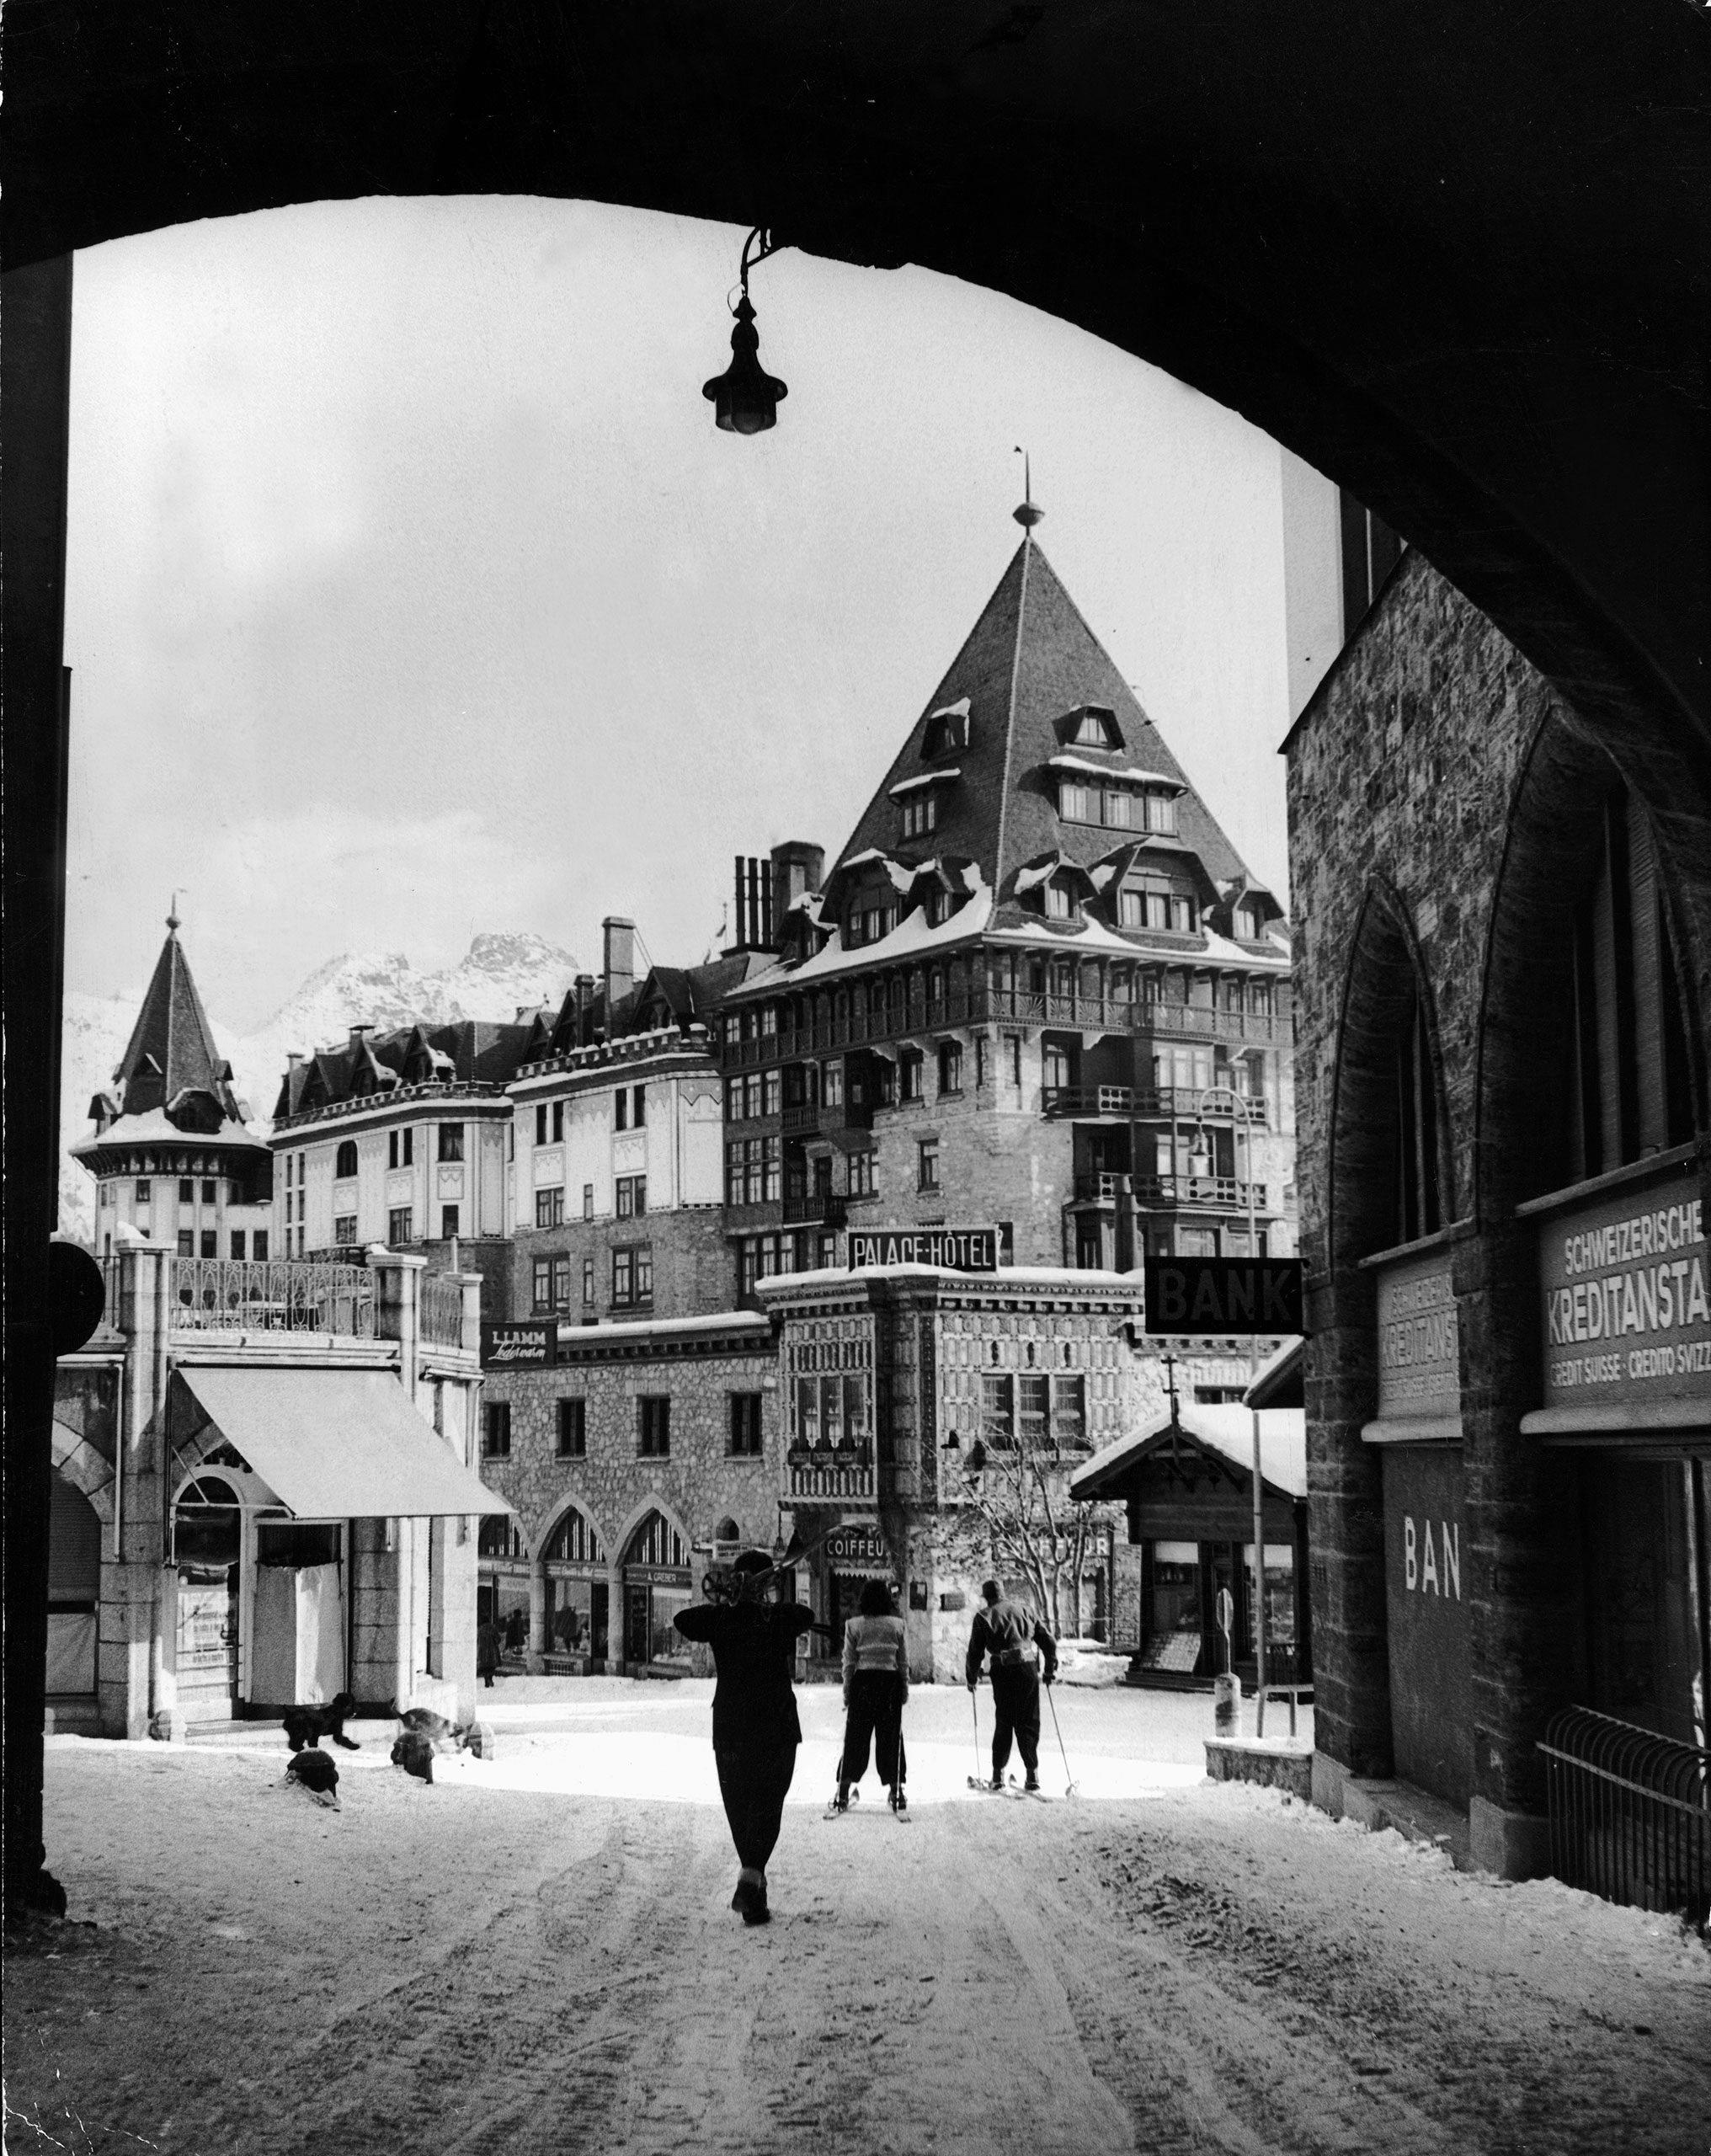 St. Moritz, 1947